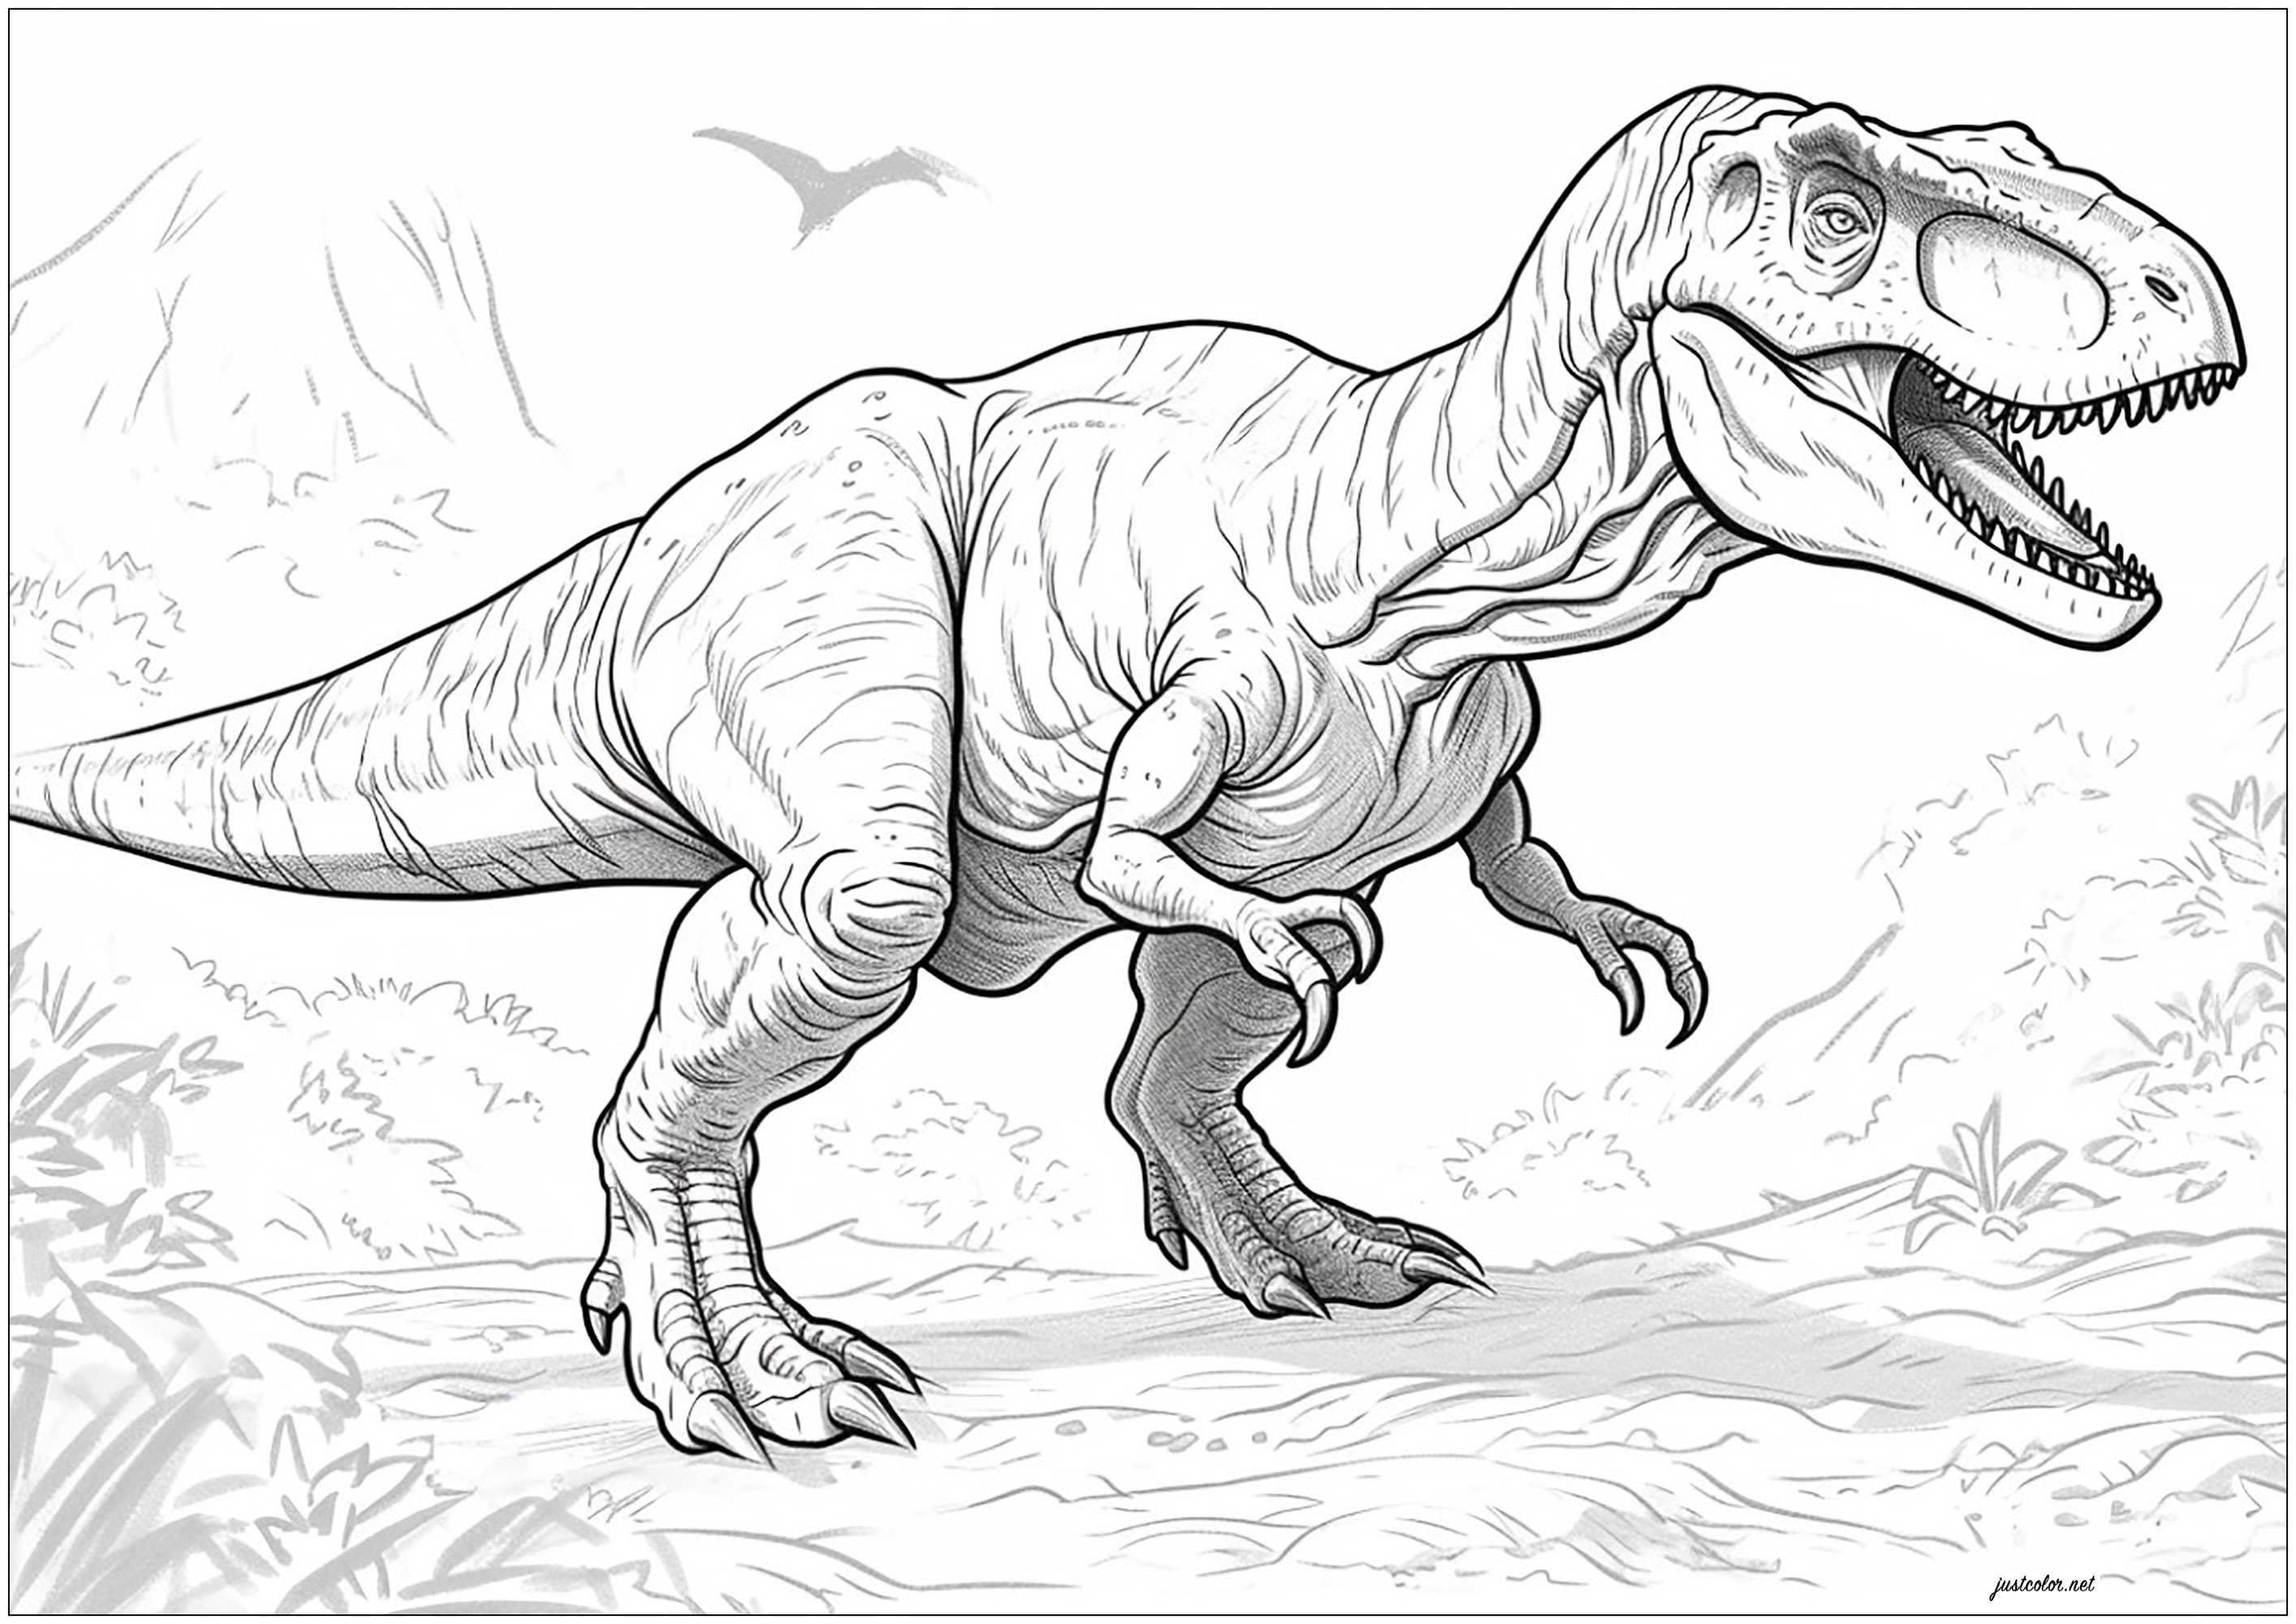 Großer Tyrannosaurus